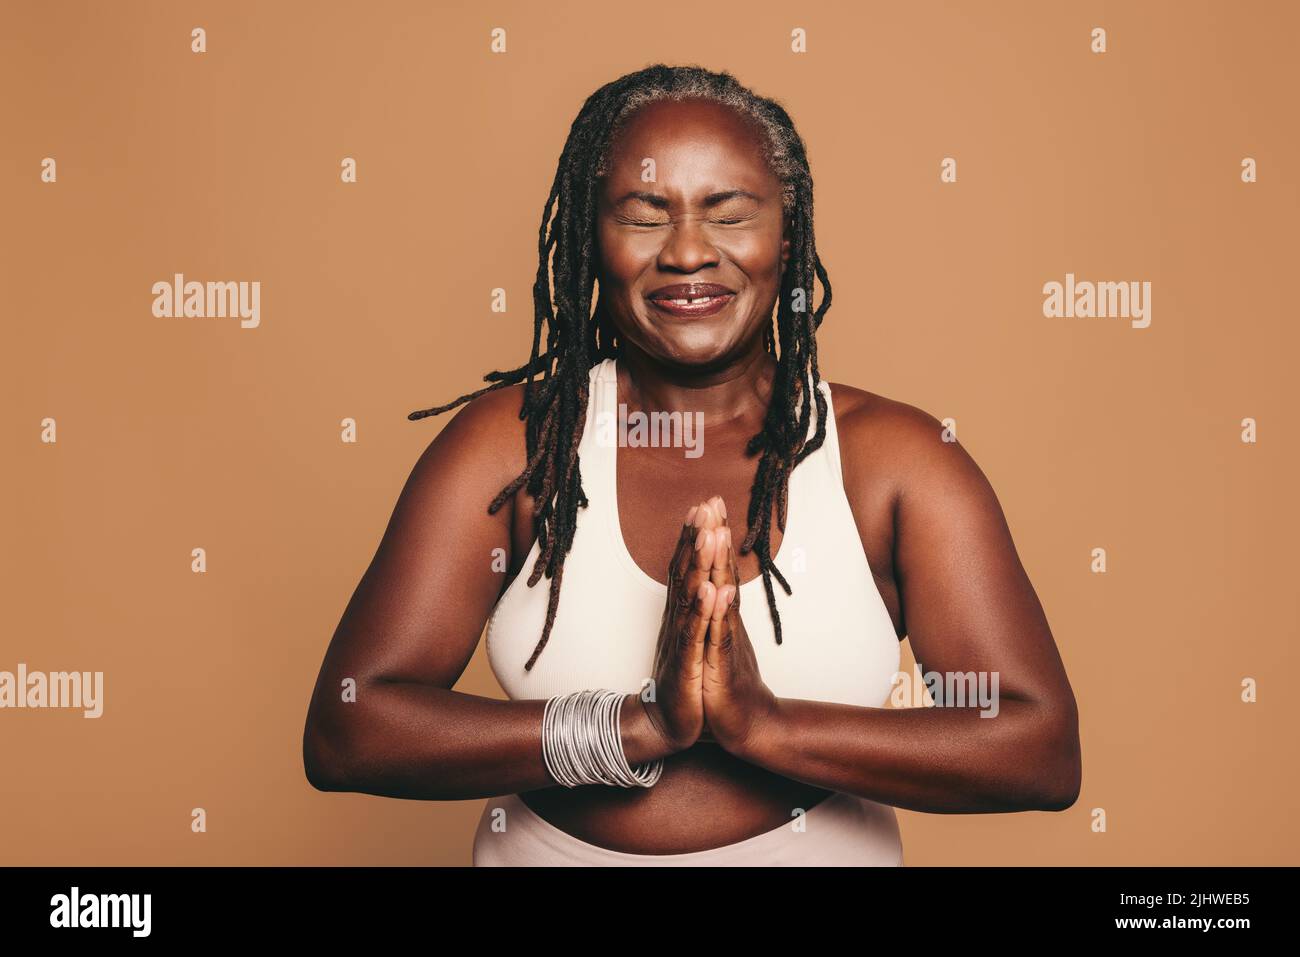 Femme joyeuse méditant avec ses yeux fermés et ses mains en position de prière. Femme heureuse avec des dreadlocks pratiquant le yoga dans un studio. Tenue sportive Banque D'Images